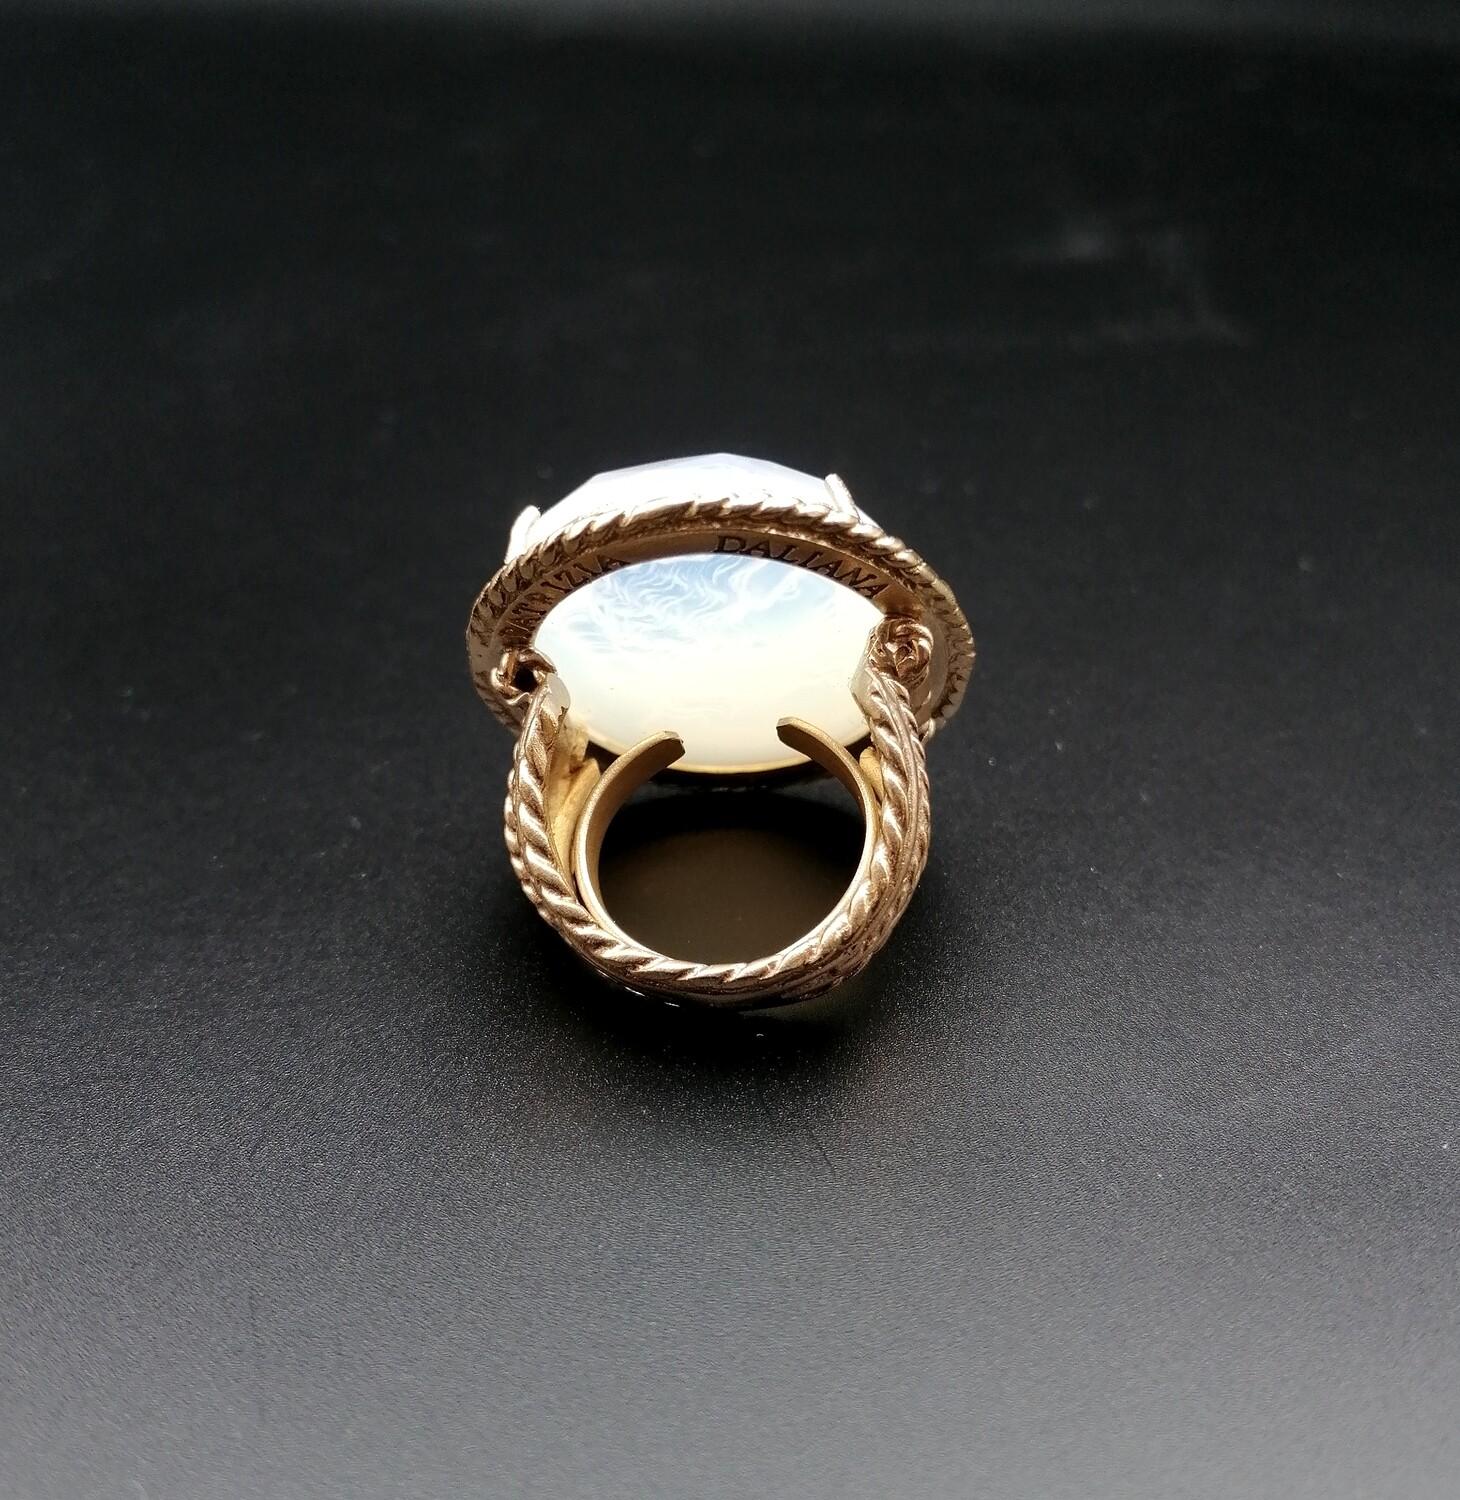 patrizia gucci wedding ring